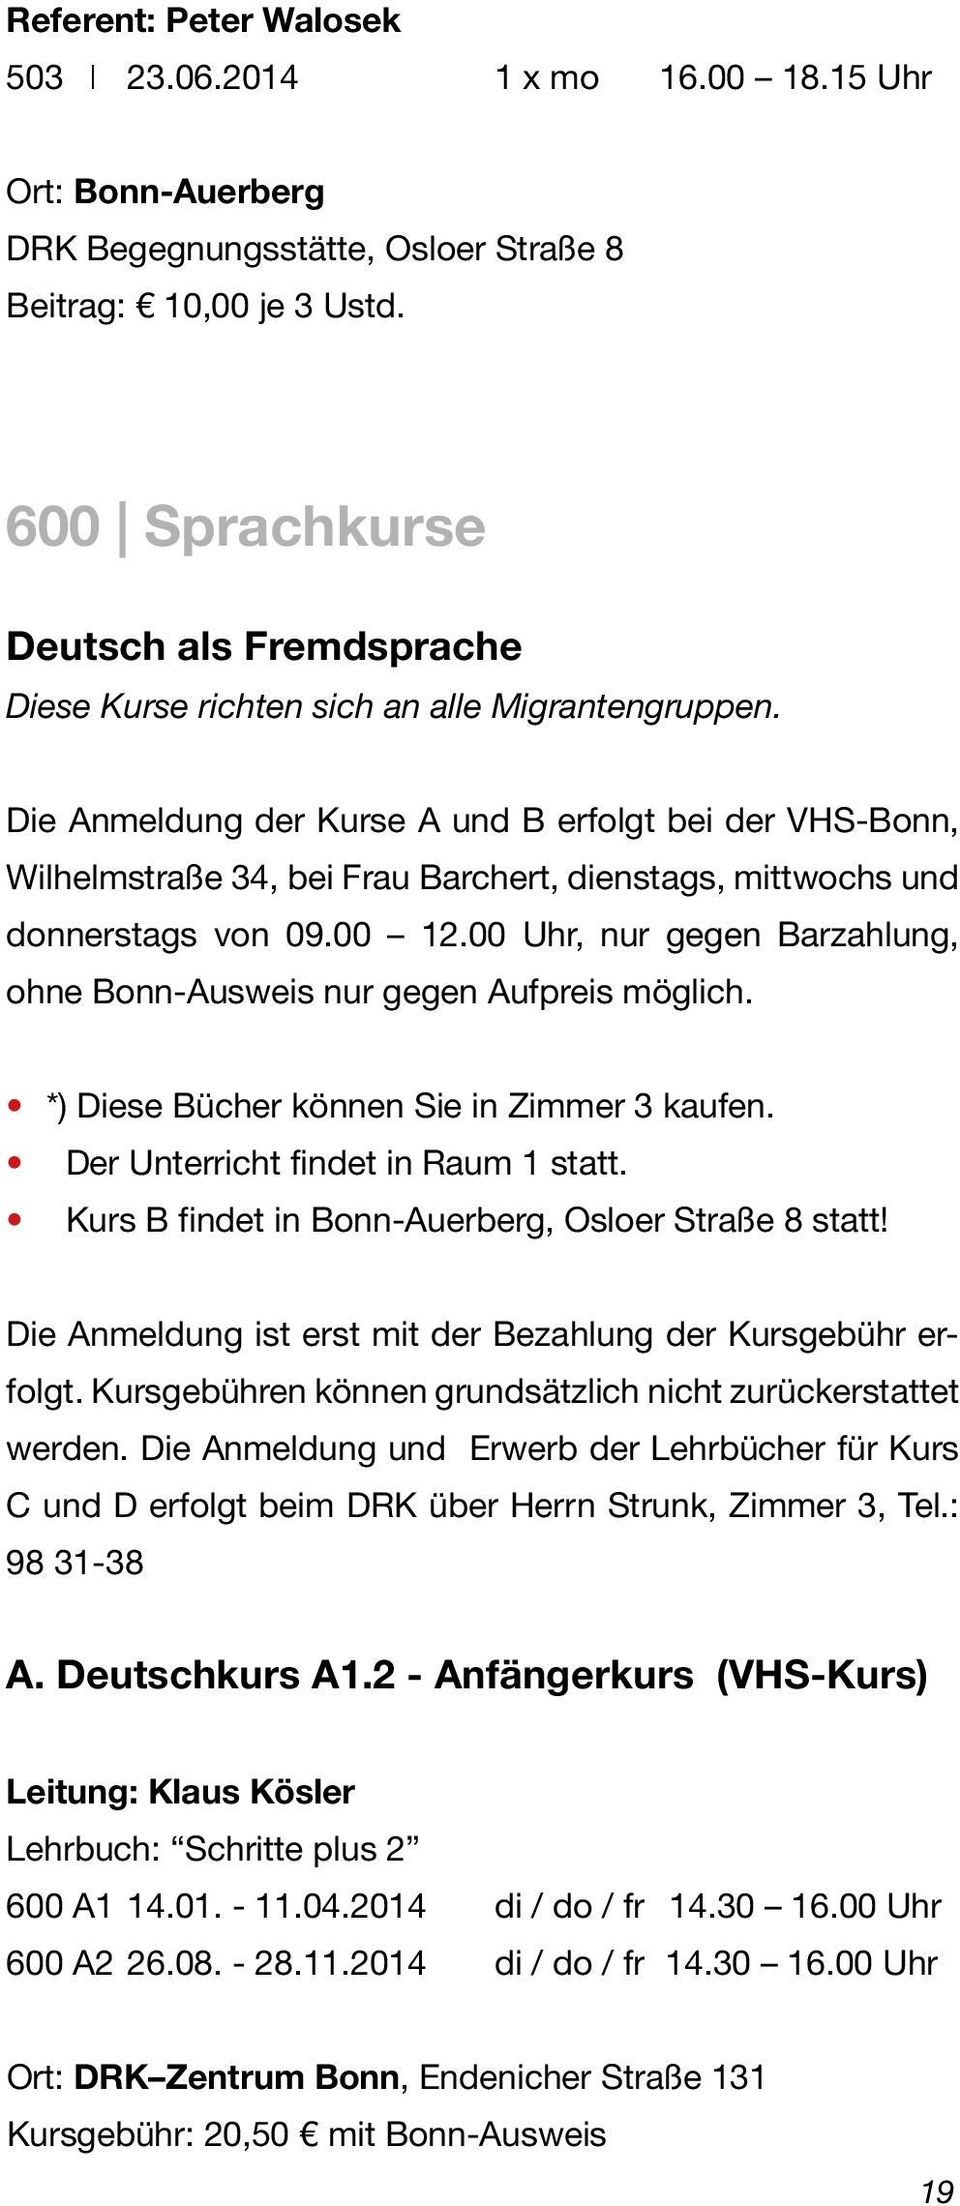 Die Anmeldung der Kurse A und B erfolgt bei der VHS-Bonn, Wilhelmstraße 34, bei Frau Barchert, dienstags, mittwochs und donnerstags von 09.00 12.